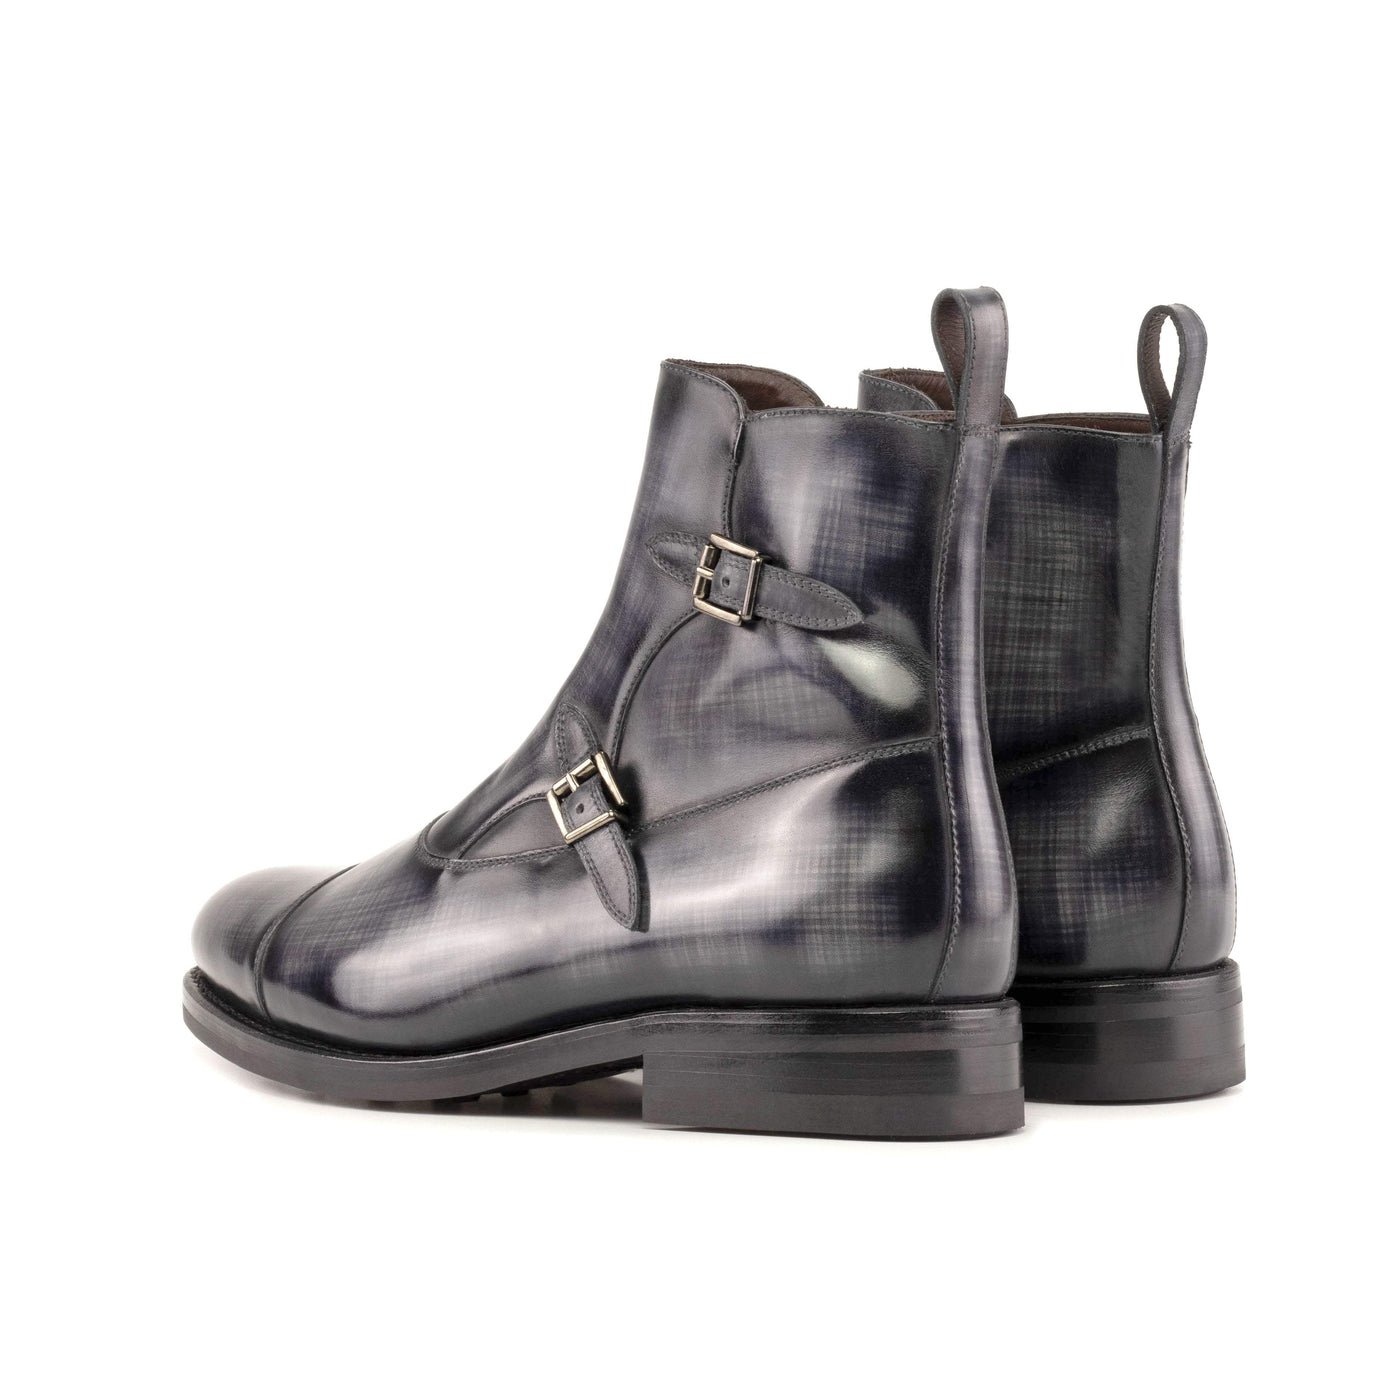 Men's Octavian Buckle Boots Patina Goodyear Welt Grey 5528 4- MERRIMIUM